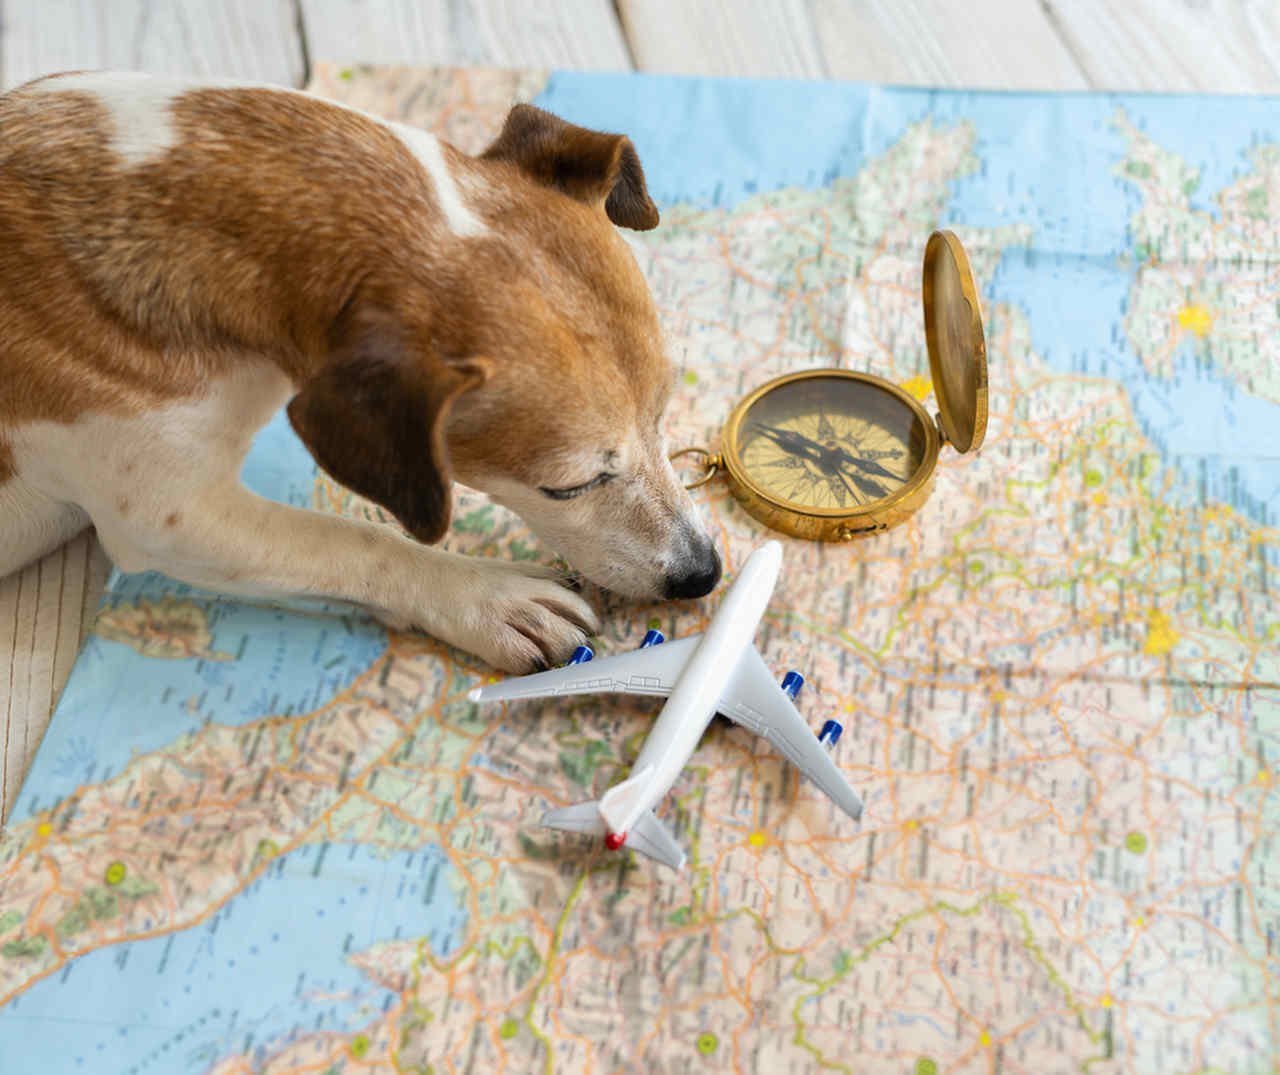 harita üzerinde pusular, köpek ve uçak maketi